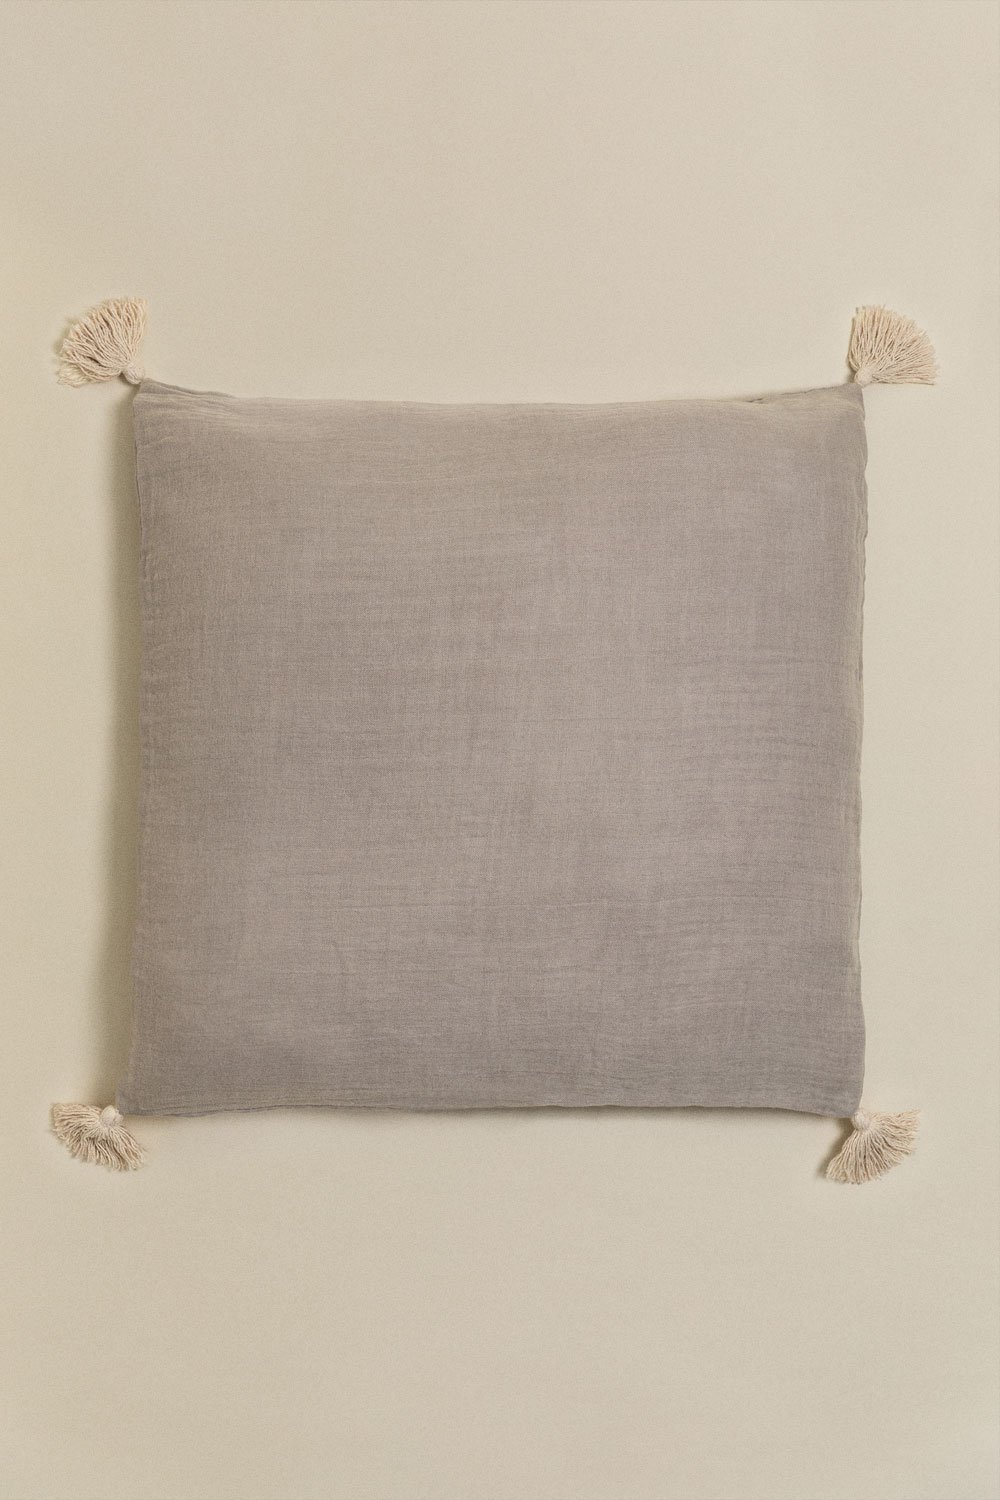 Kwadratowa poduszka bawełniana (60x60 cm) Sozume, obrazek w galerii 1